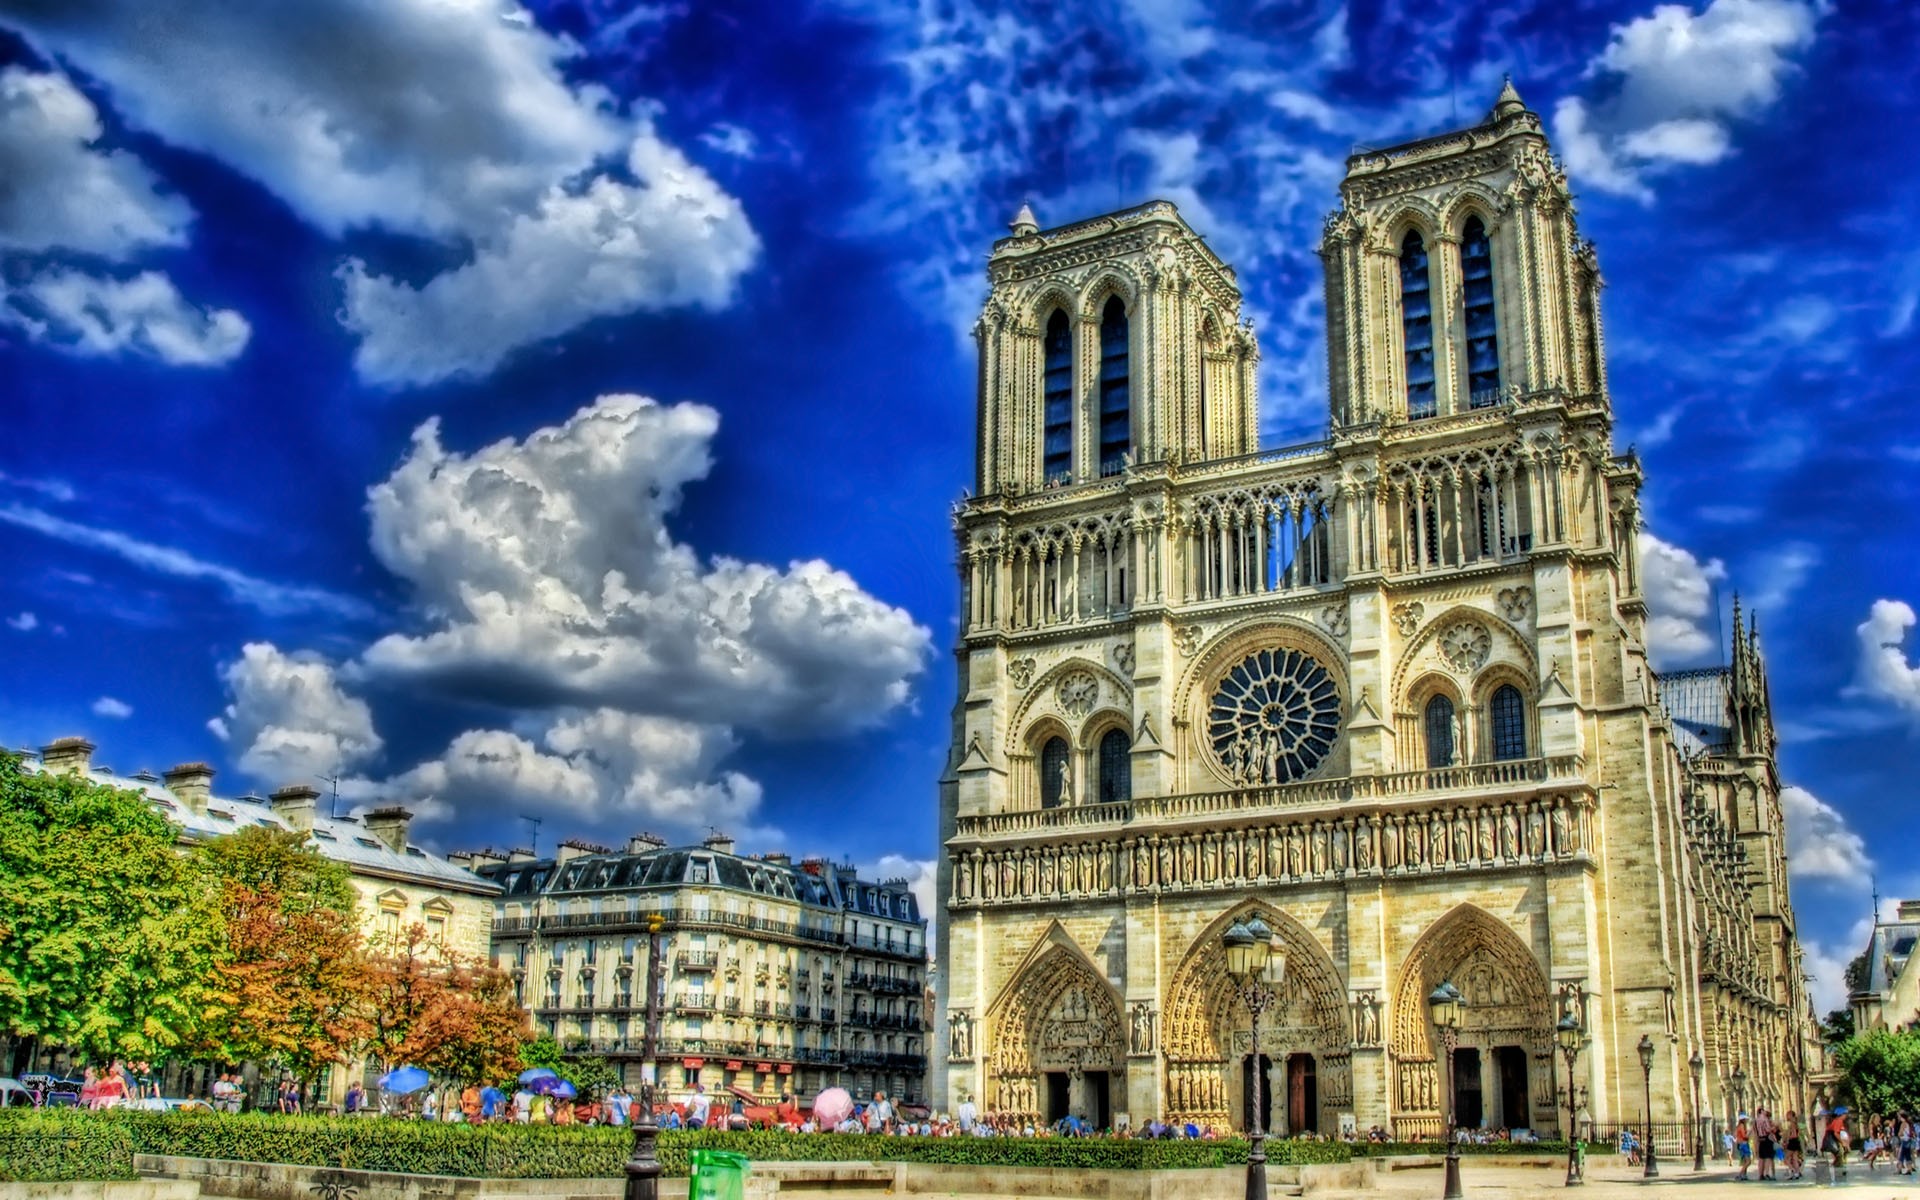 Париж, соборы, HDR фотографии - обои на рабочий стол